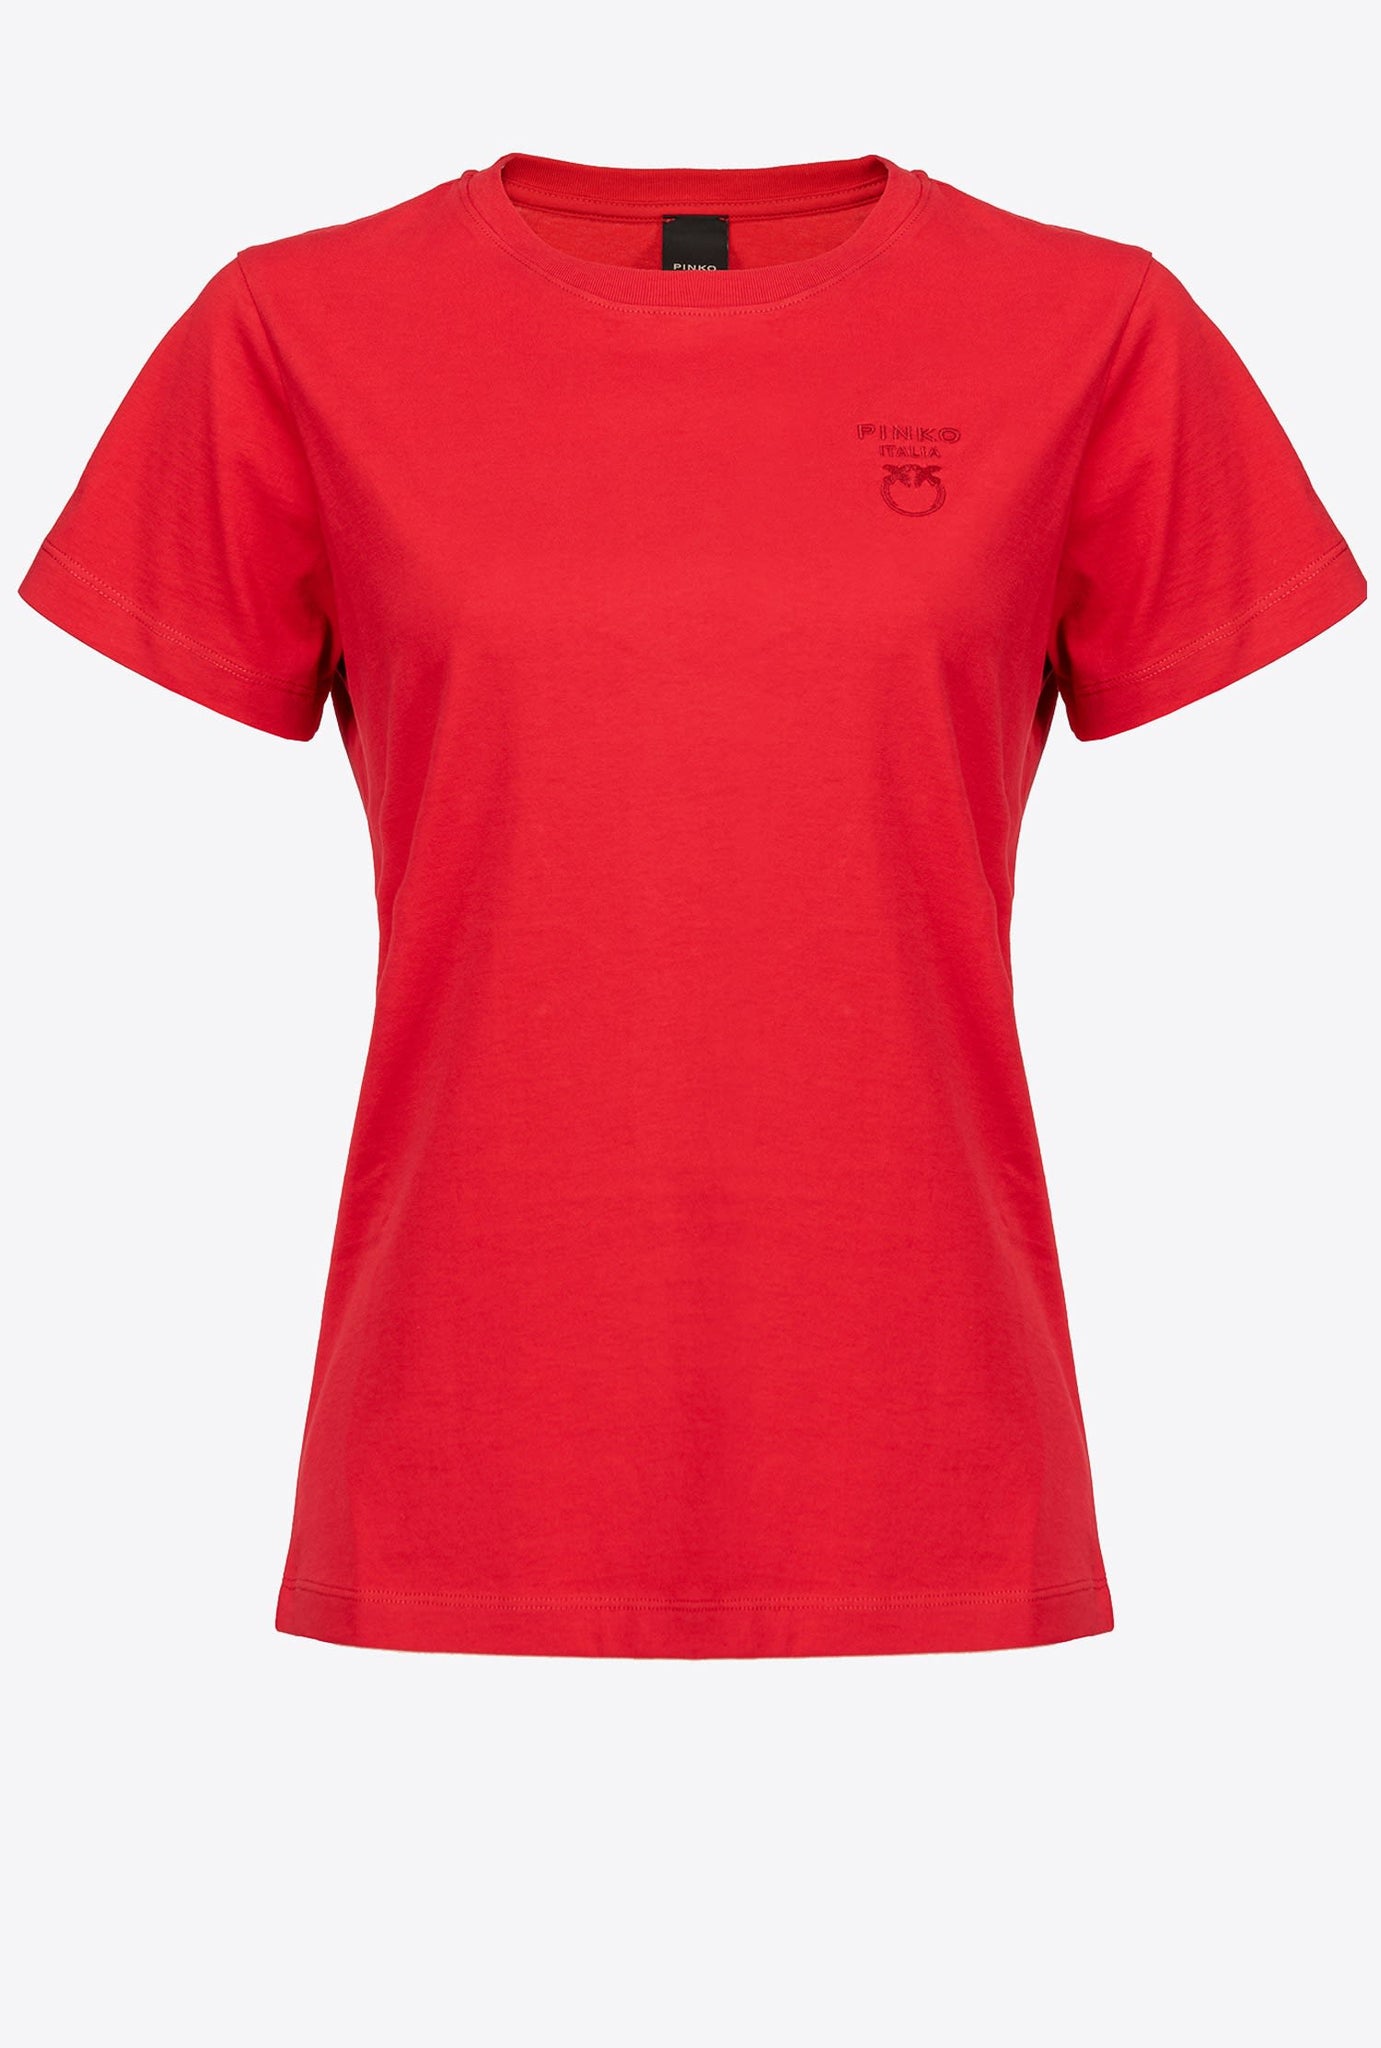 T-Shirt Pinko con Logo / Rosso - Ideal Moda